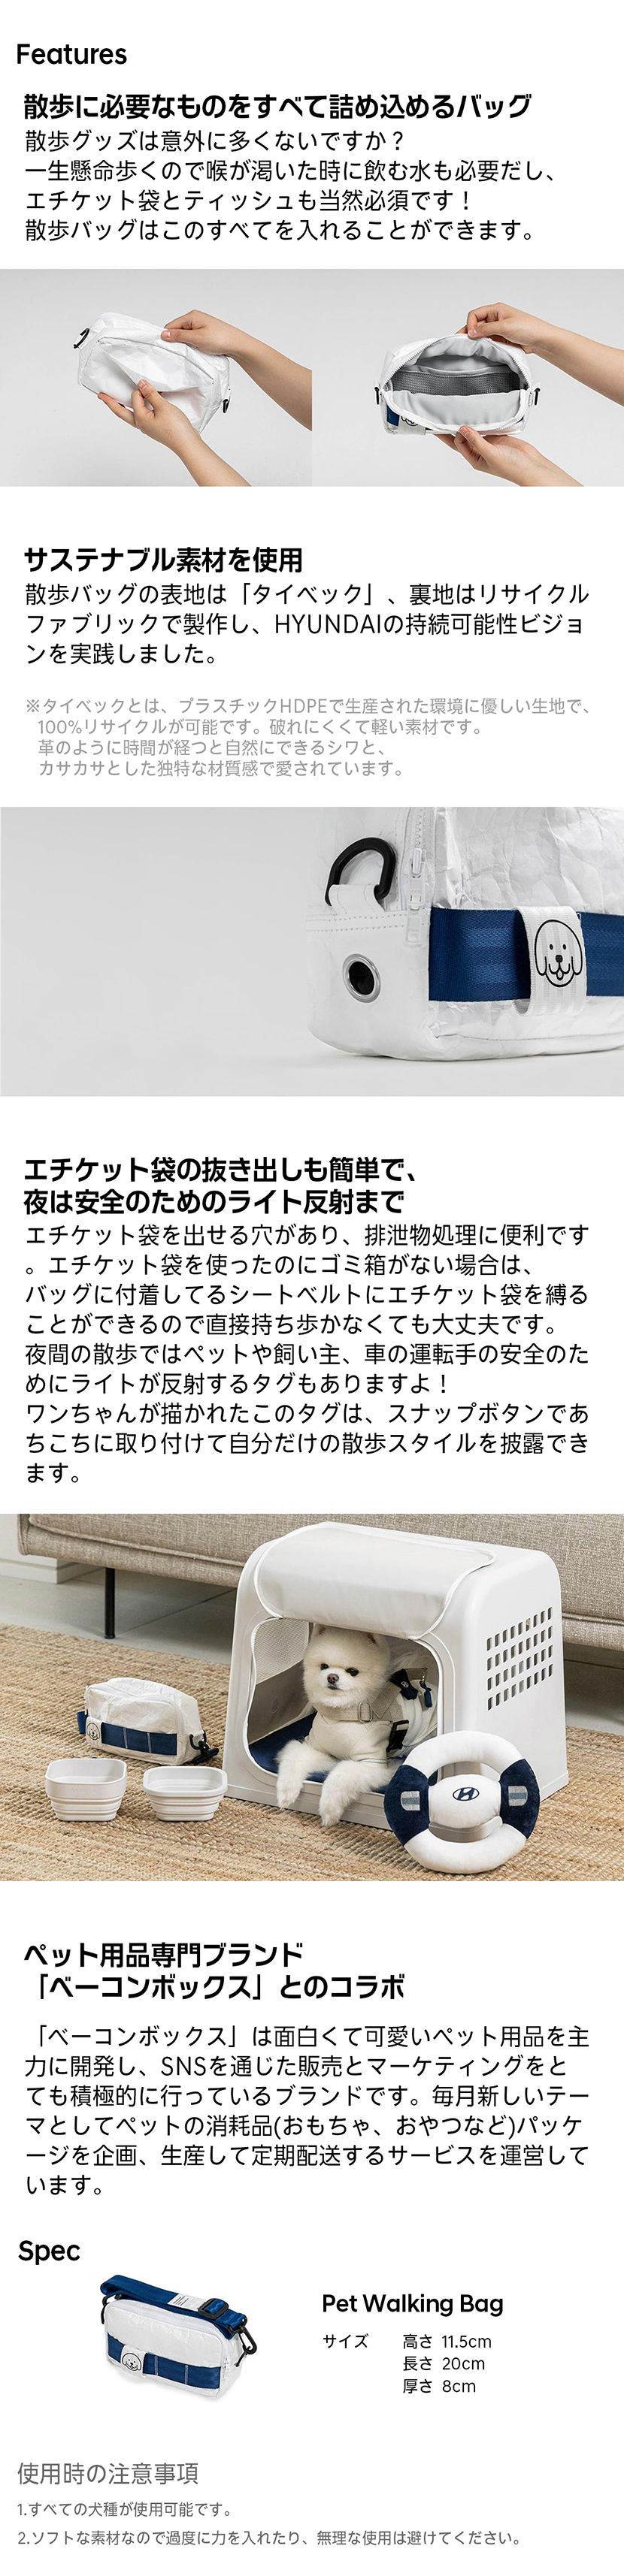 Hyundai Collection ペット用おさんぽバッグ-ヒュンダイ ジャパン オンラインショップ